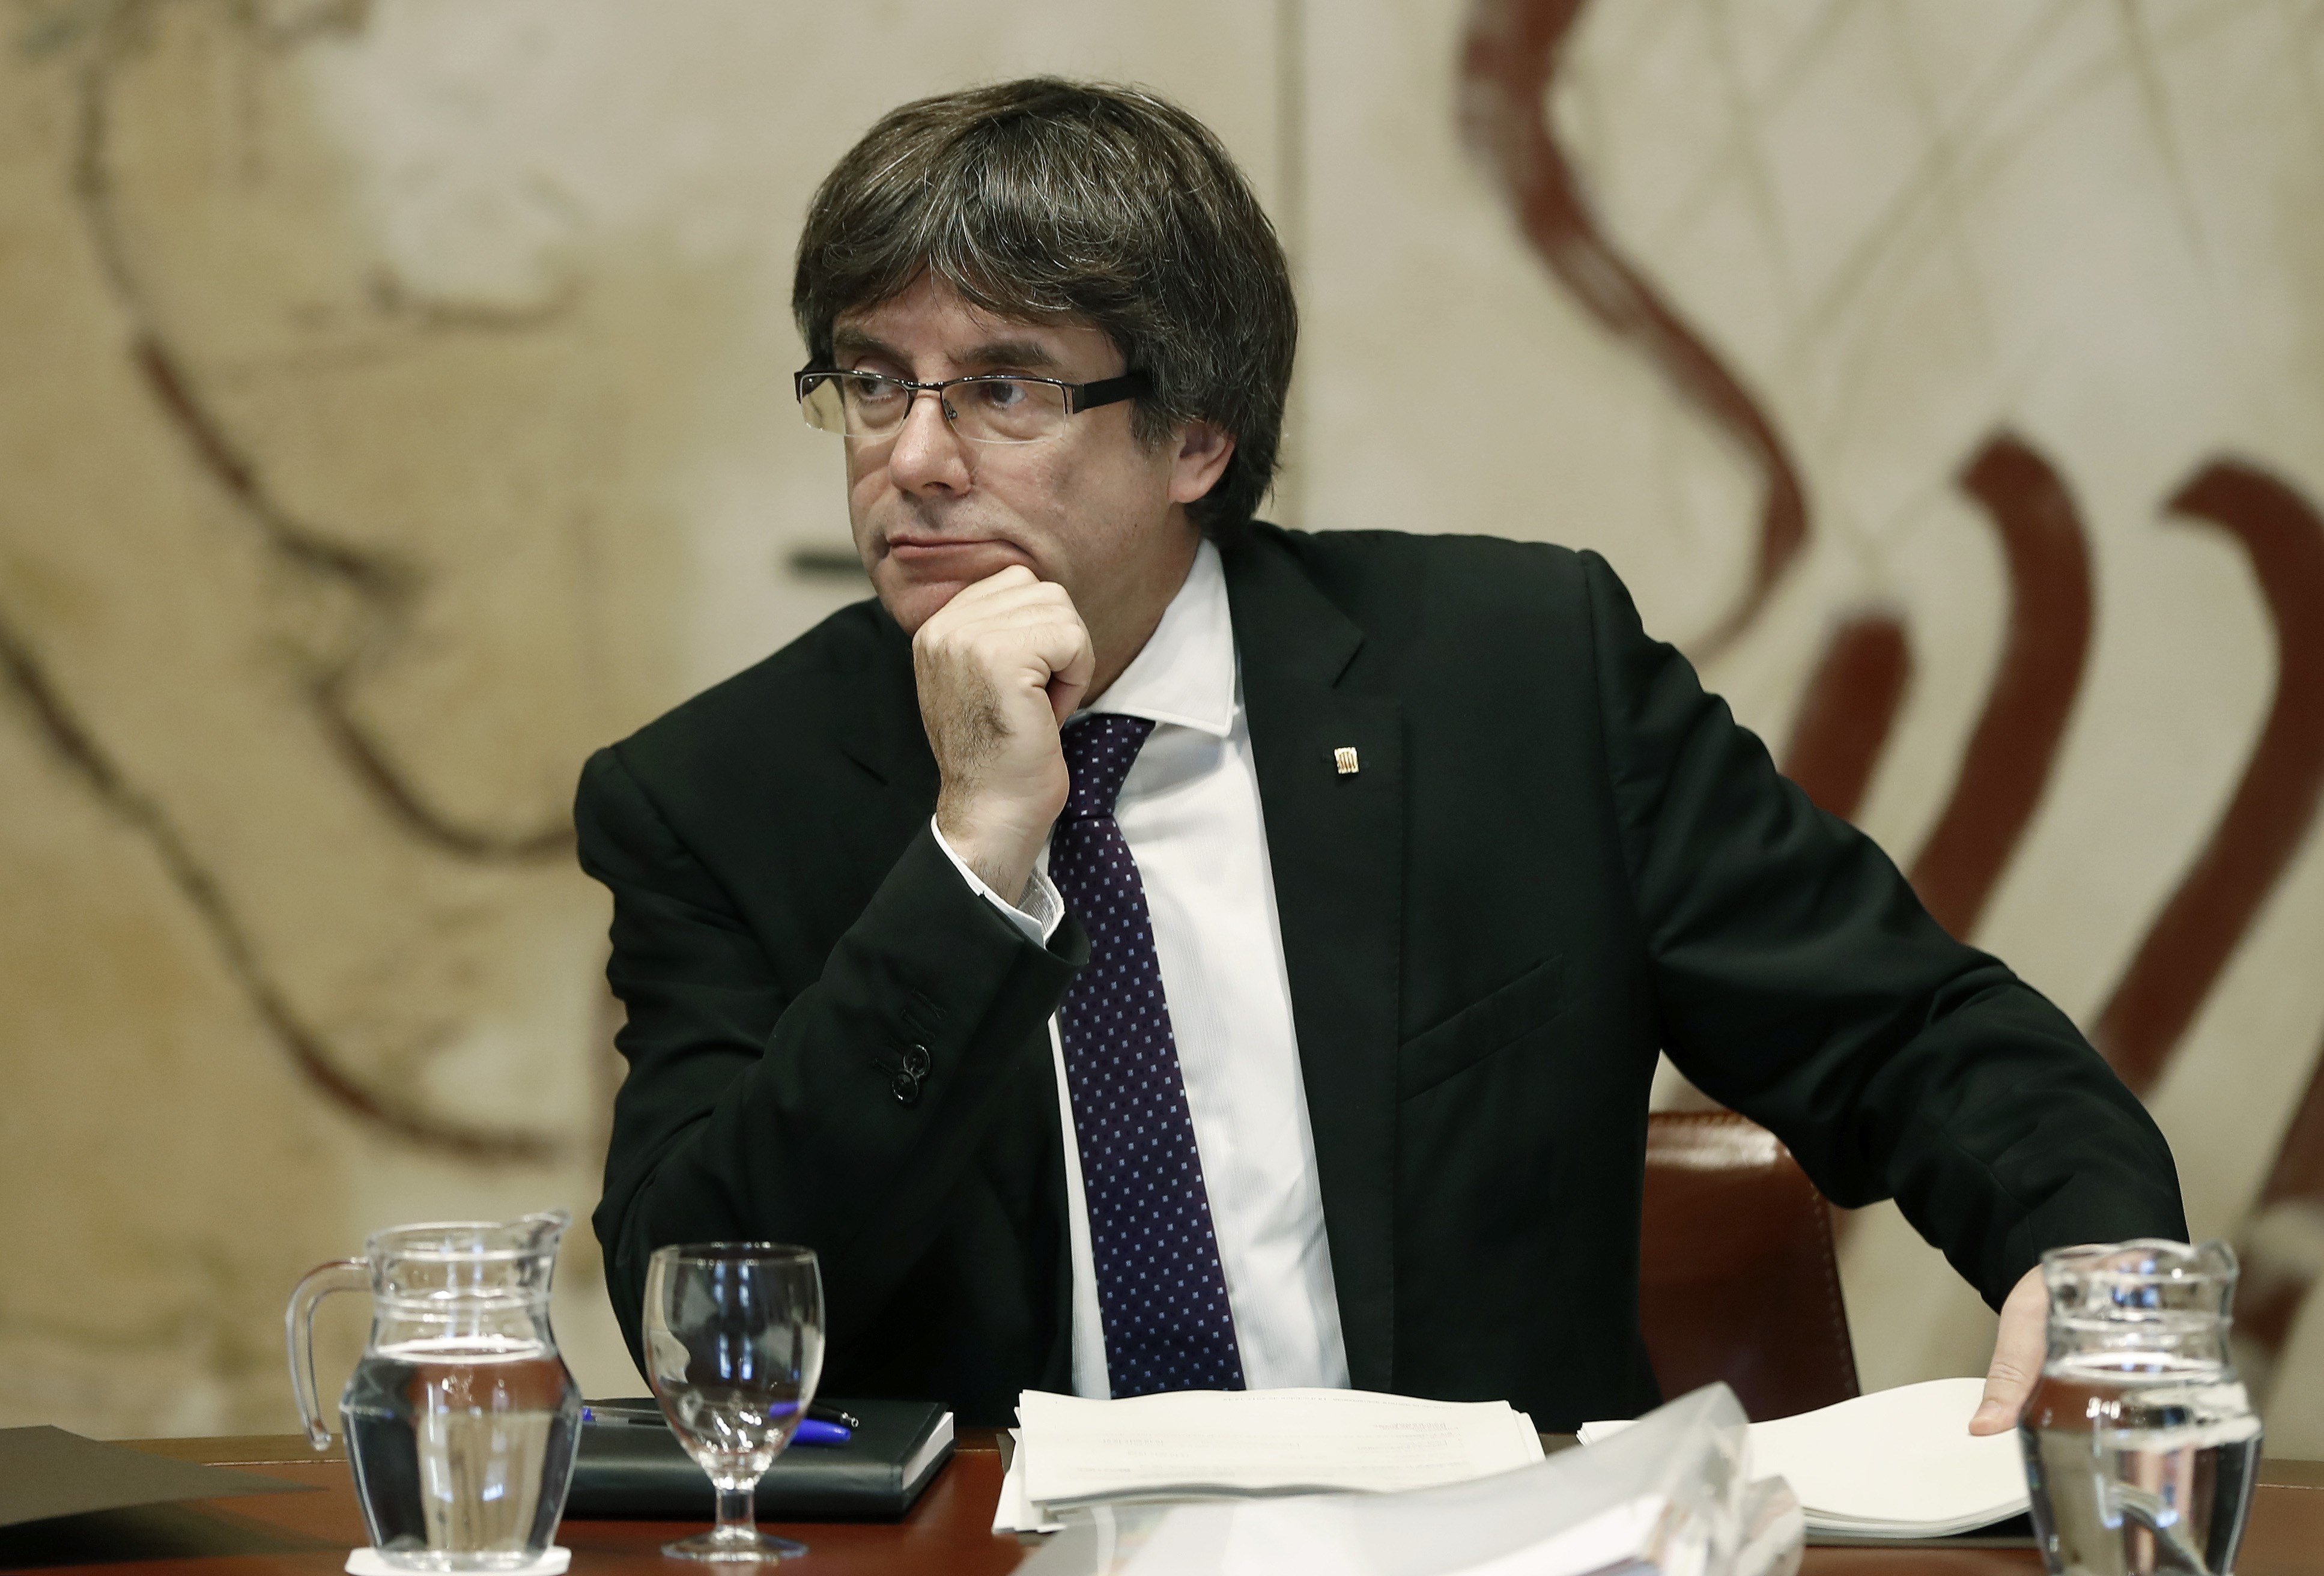 Puigdemont als diputats de JxSí: "Si convoco, aturarem el 155"